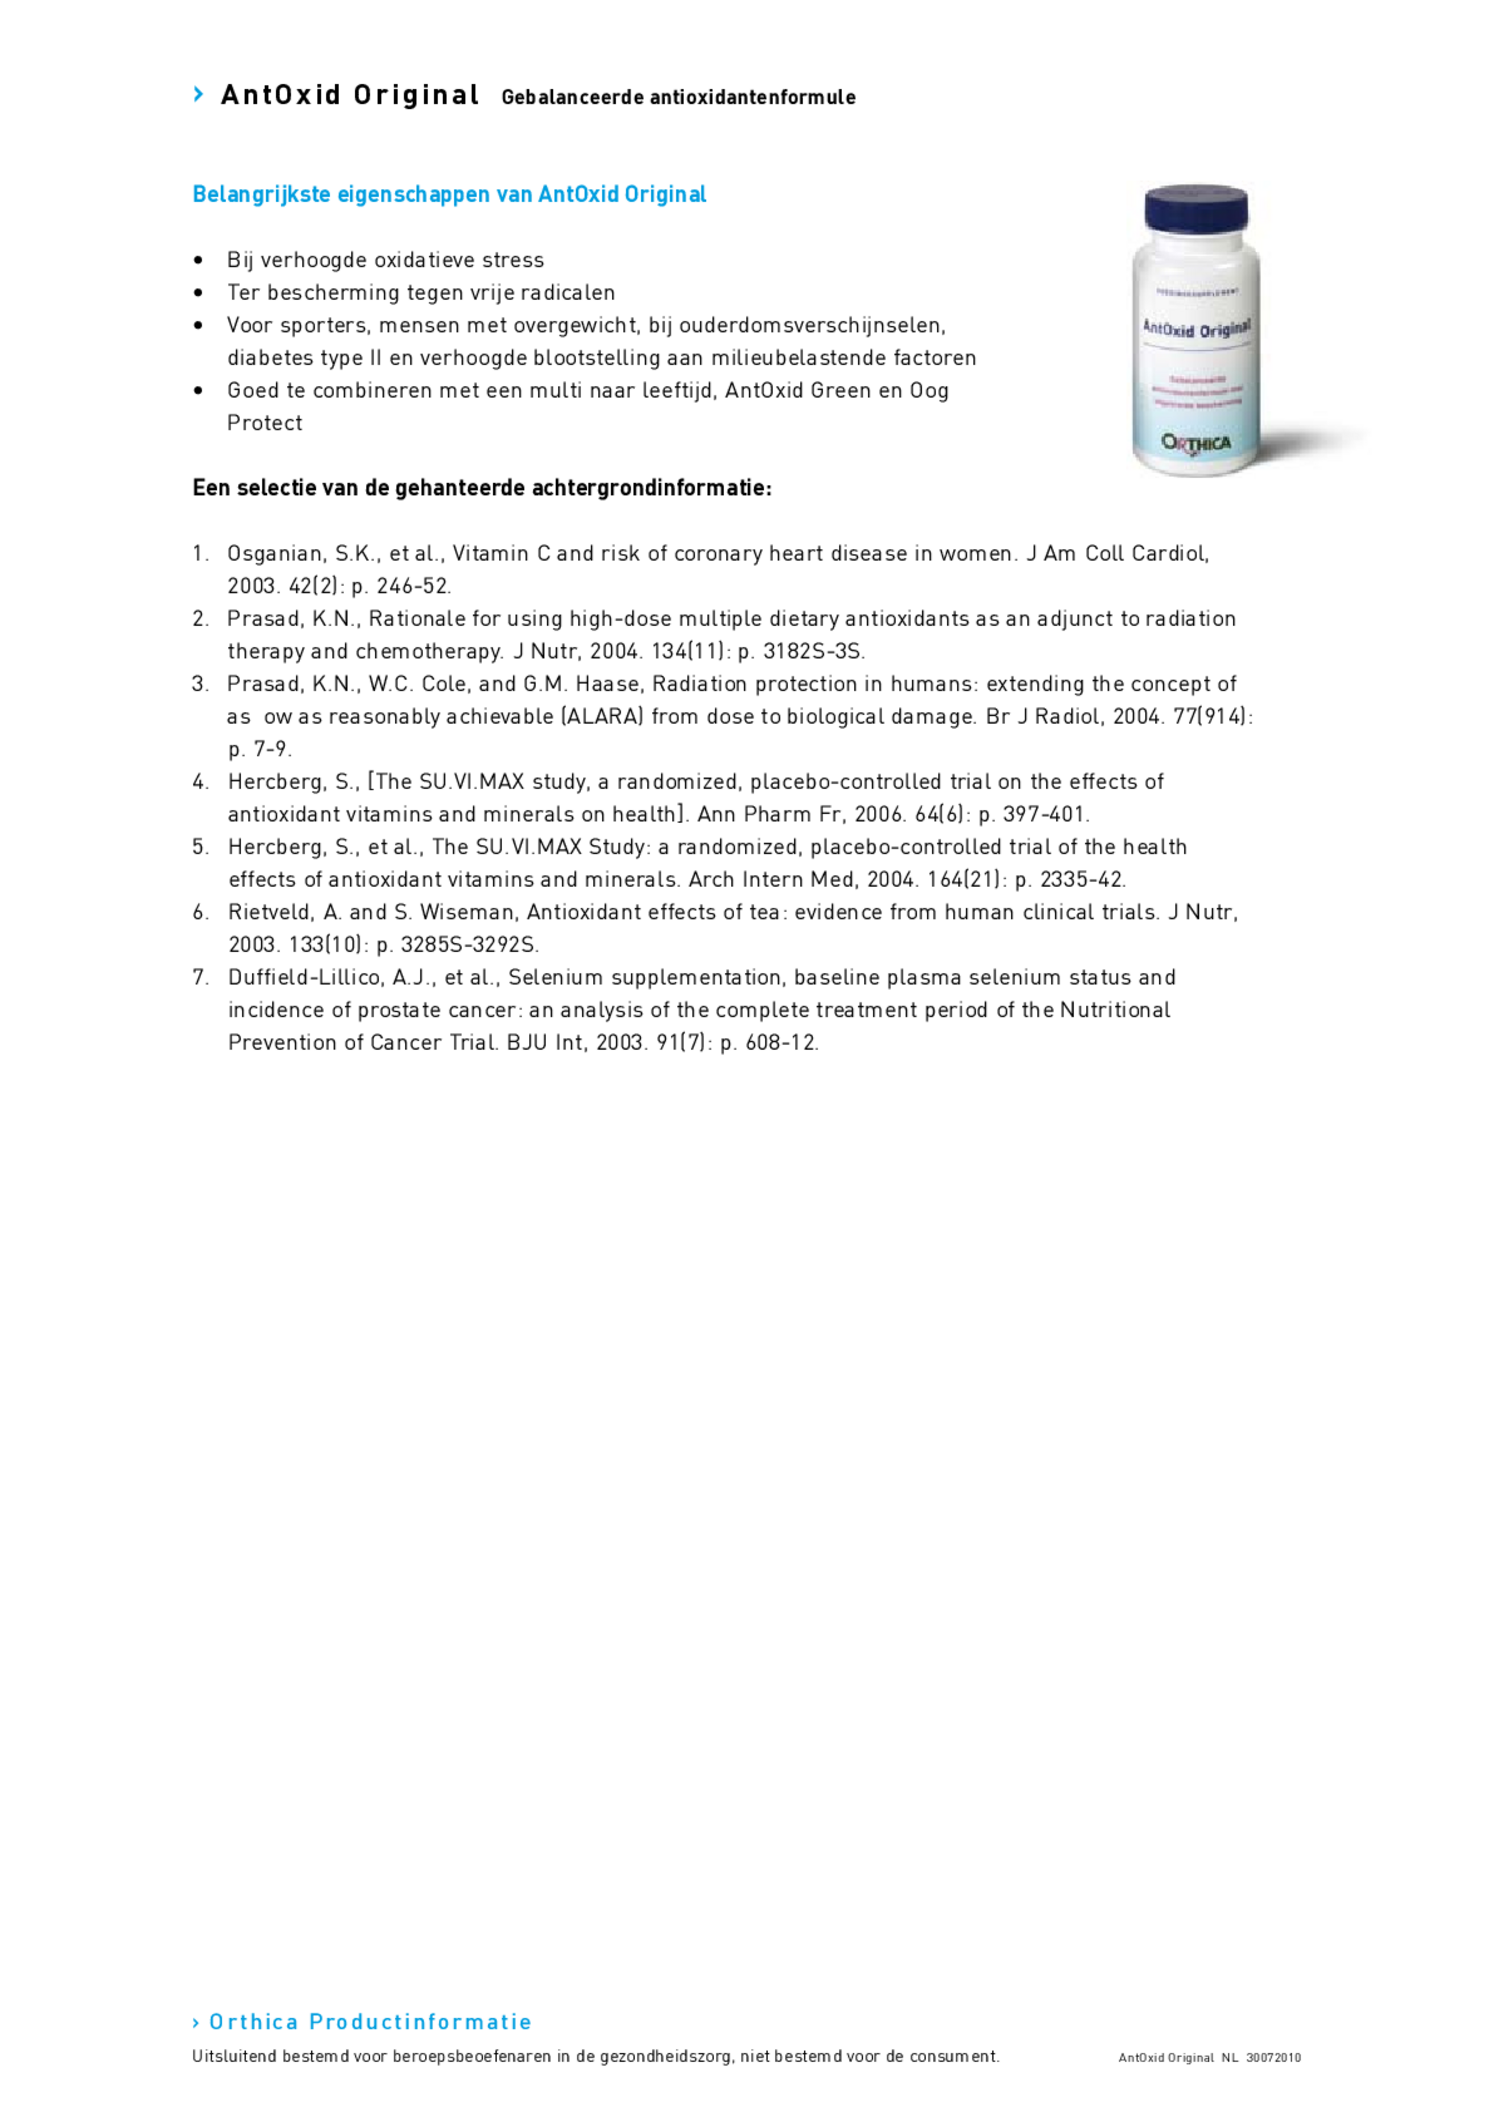 AntOxid Original Tabletten afbeelding van document #2, productonderzoek